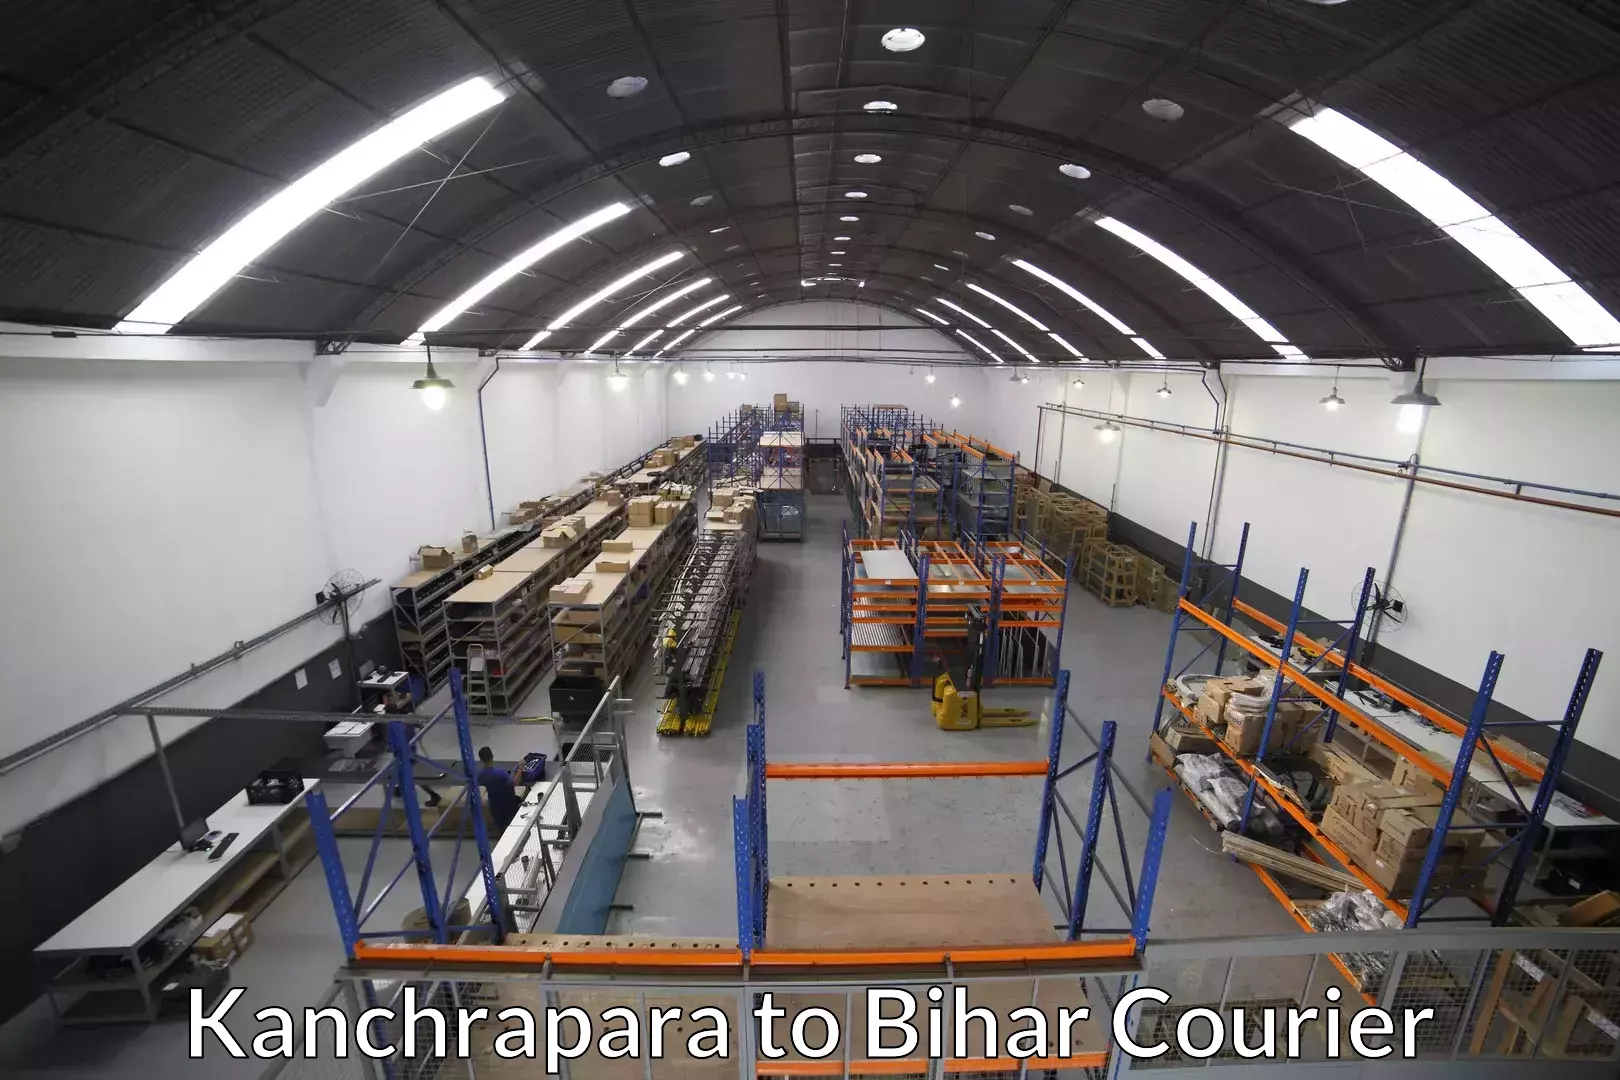 Furniture transport solutions Kanchrapara to Jaynagar